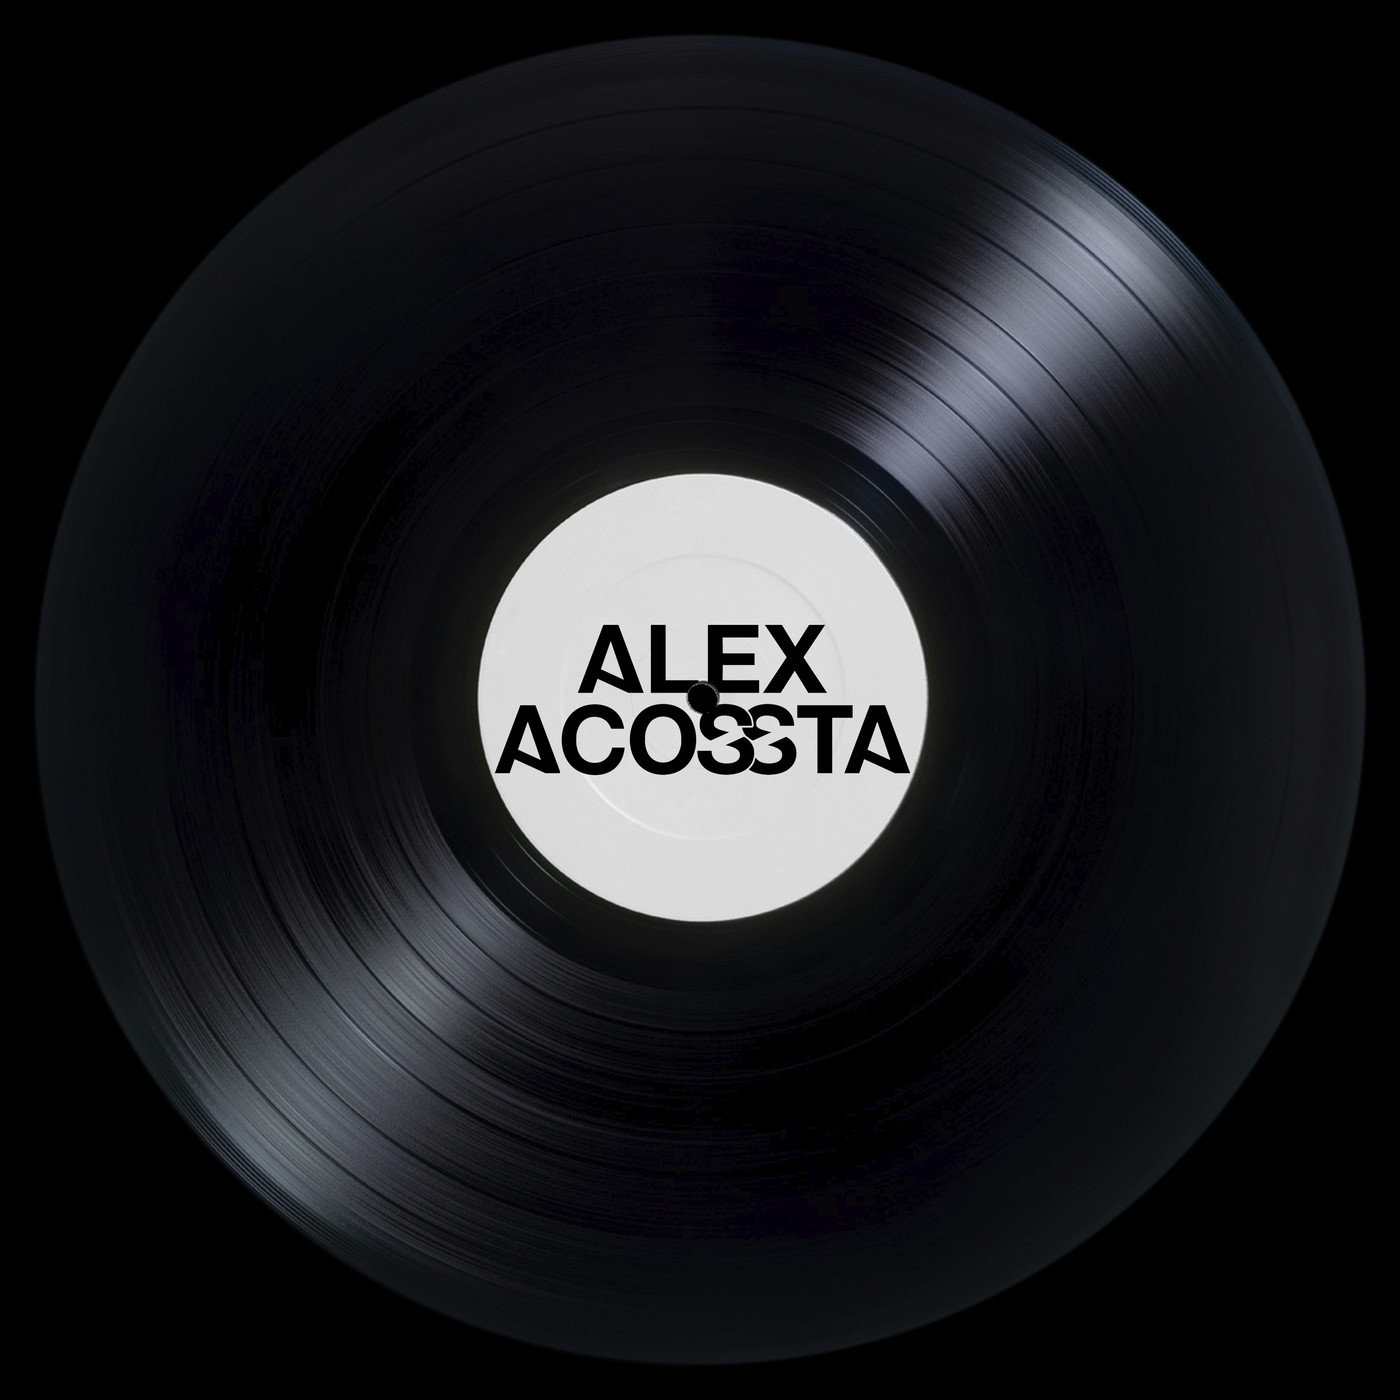 Alex Acossta - Promo Mix 6 - Big Room, EDM, Progressive House